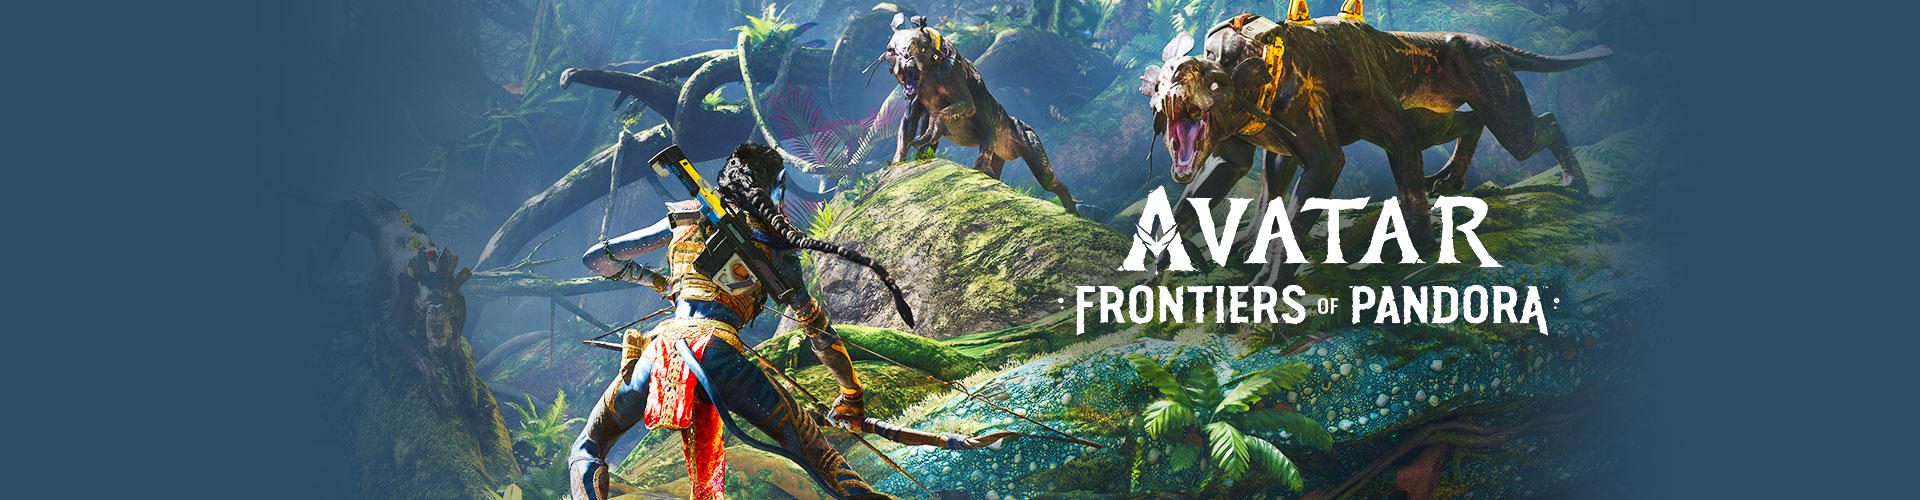 Configuration PC minimale, recommandée et 4K pour jouer à Avatar : Frontiers of Pandora